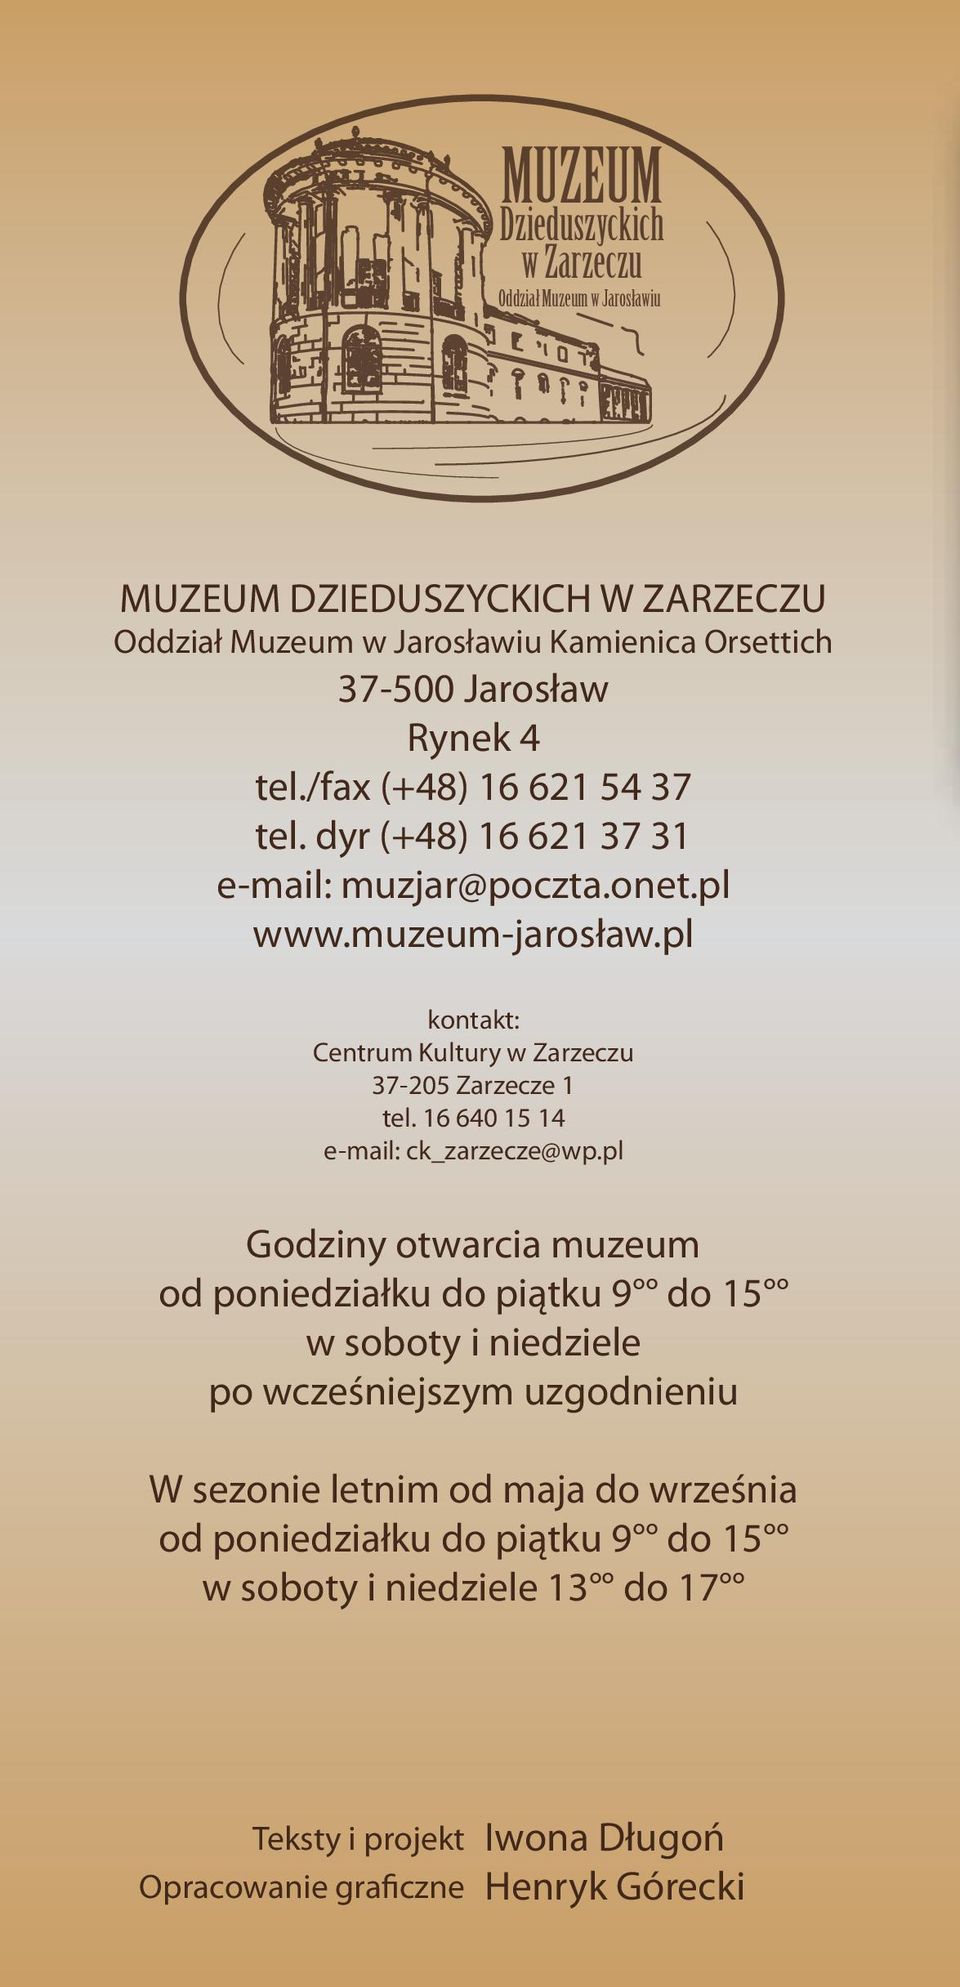 pl kontakt: Centrum Kultury w Zarzeczu 37-205 Zarzecze 1 tel. 16 640 15 14 e-mail: ck_zarzecze@wp.